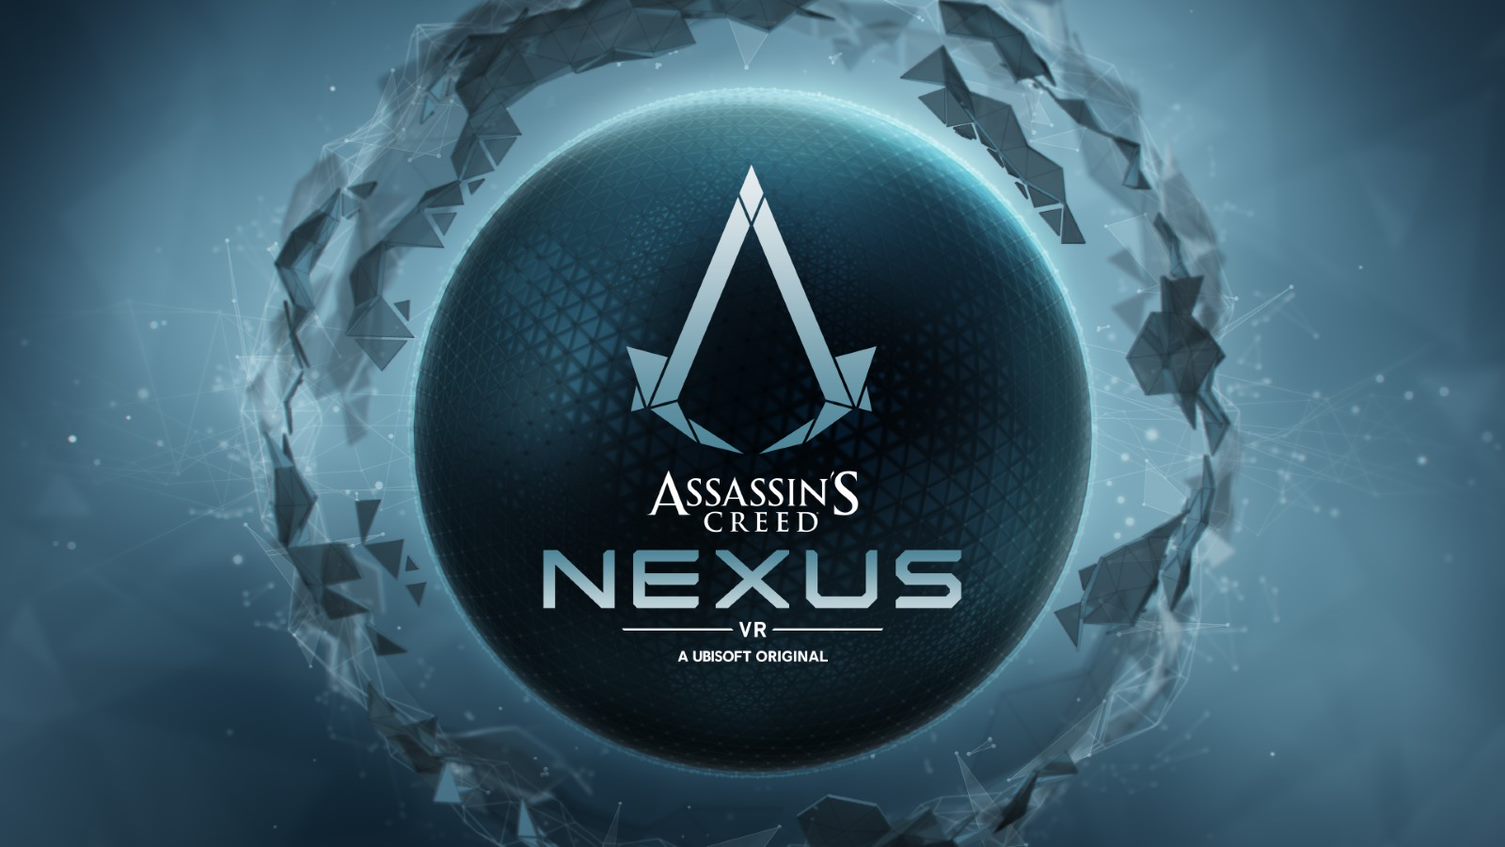 Das Assassin's Creed-Logo erscheint in Weiß auf einem blauen Kreis, gefolgt von den Worten Assassin's Creed: Nexus VR